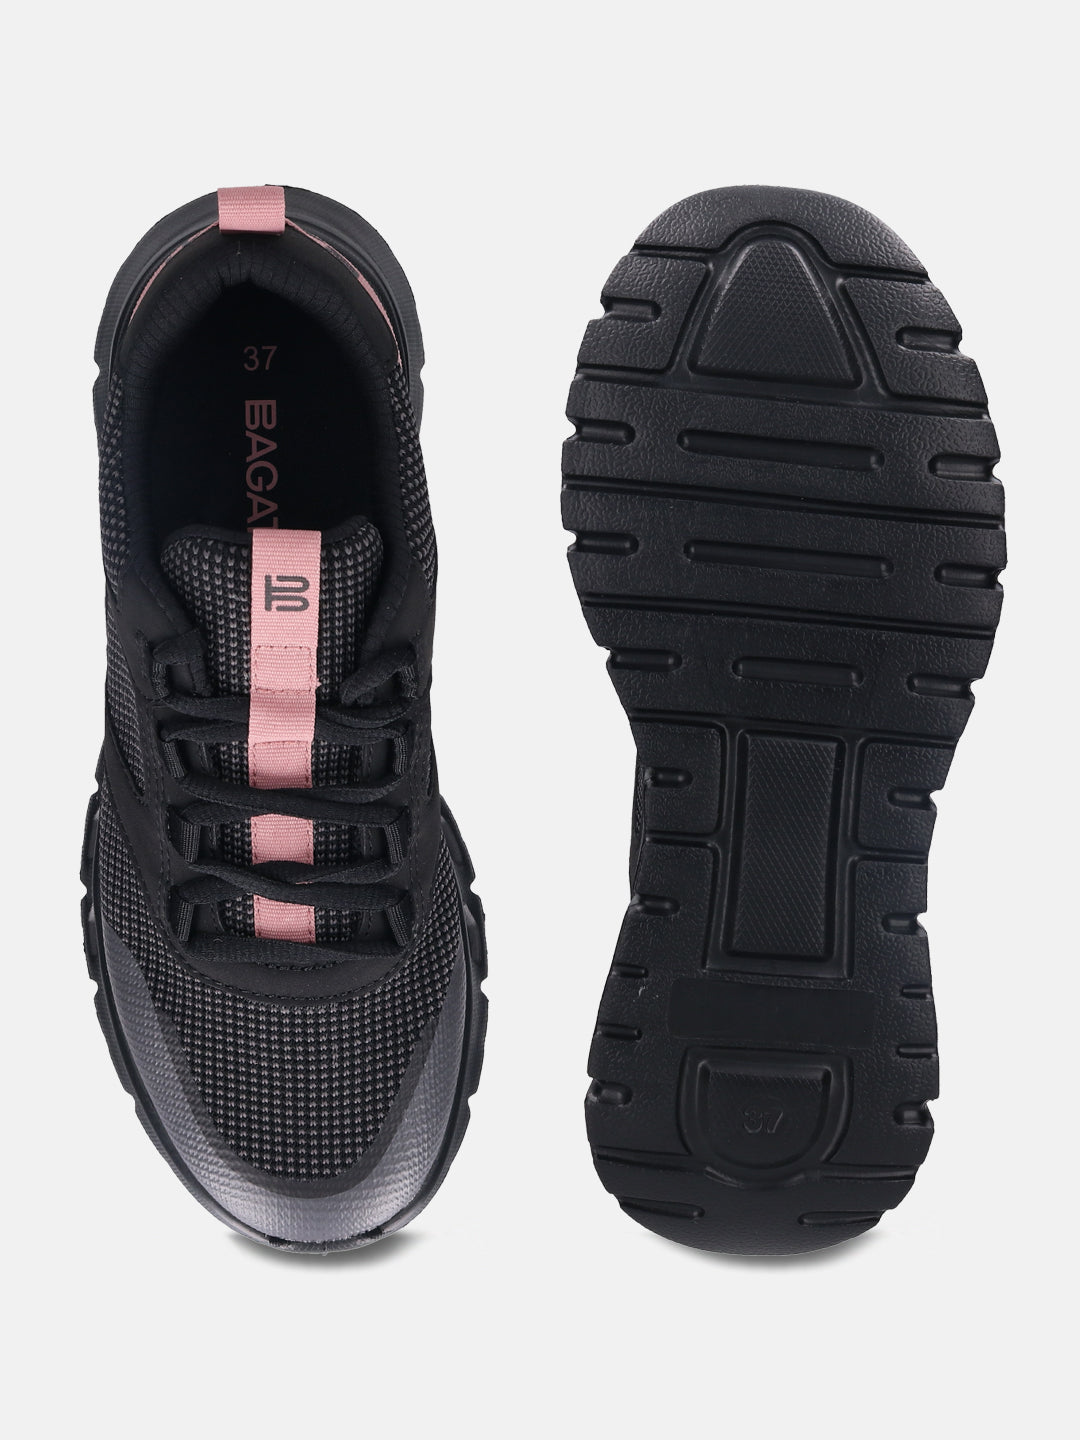 Nesaja Grey & Black Sneakers - BAGATT